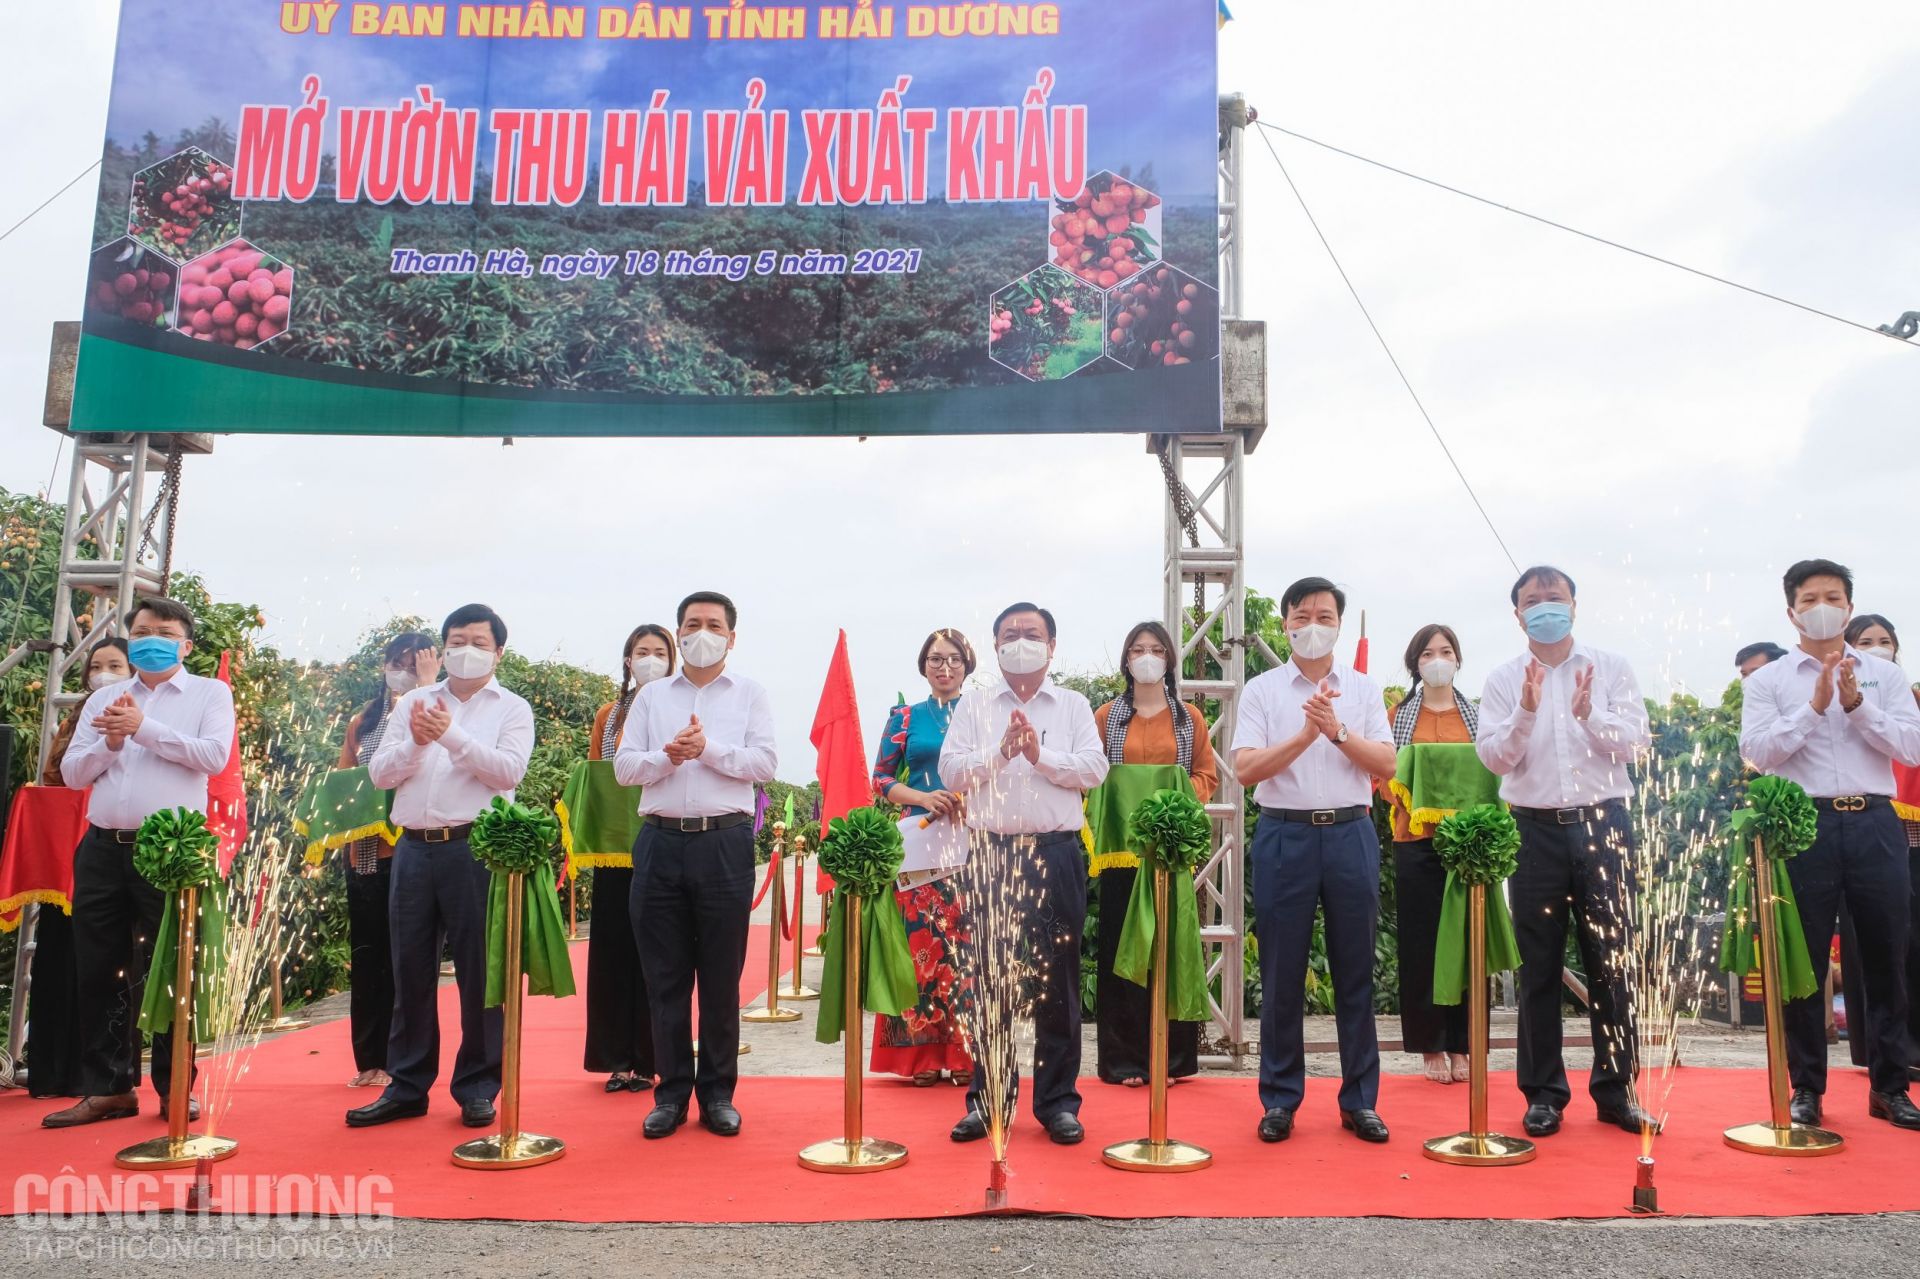 Nghi lễ cắt băng mở vườn hái vải xuất khẩu tại thôn thôn Thanh Lanh, xã Thanh Quang, huyện Thanh Hà, tỉnh Hải Dương